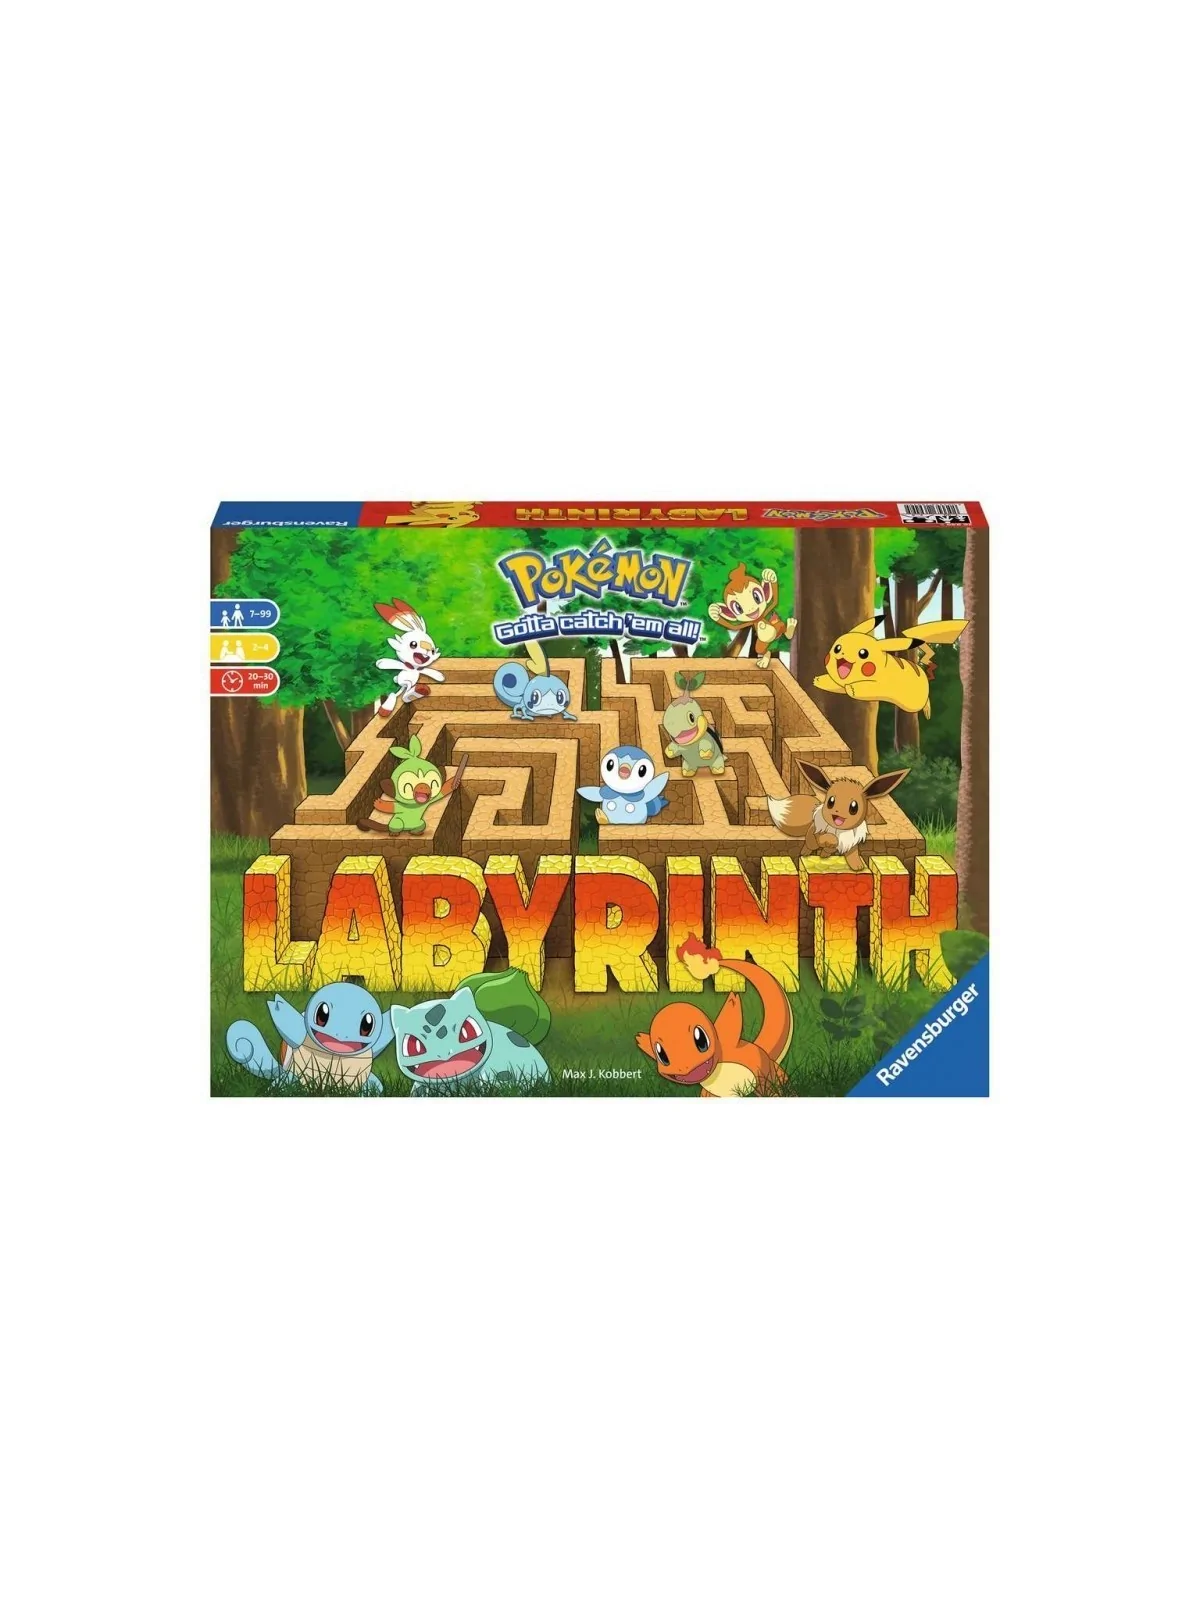 Comprar Pokémon Labyrinth barato al mejor precio 35,06 € de Ravensburg